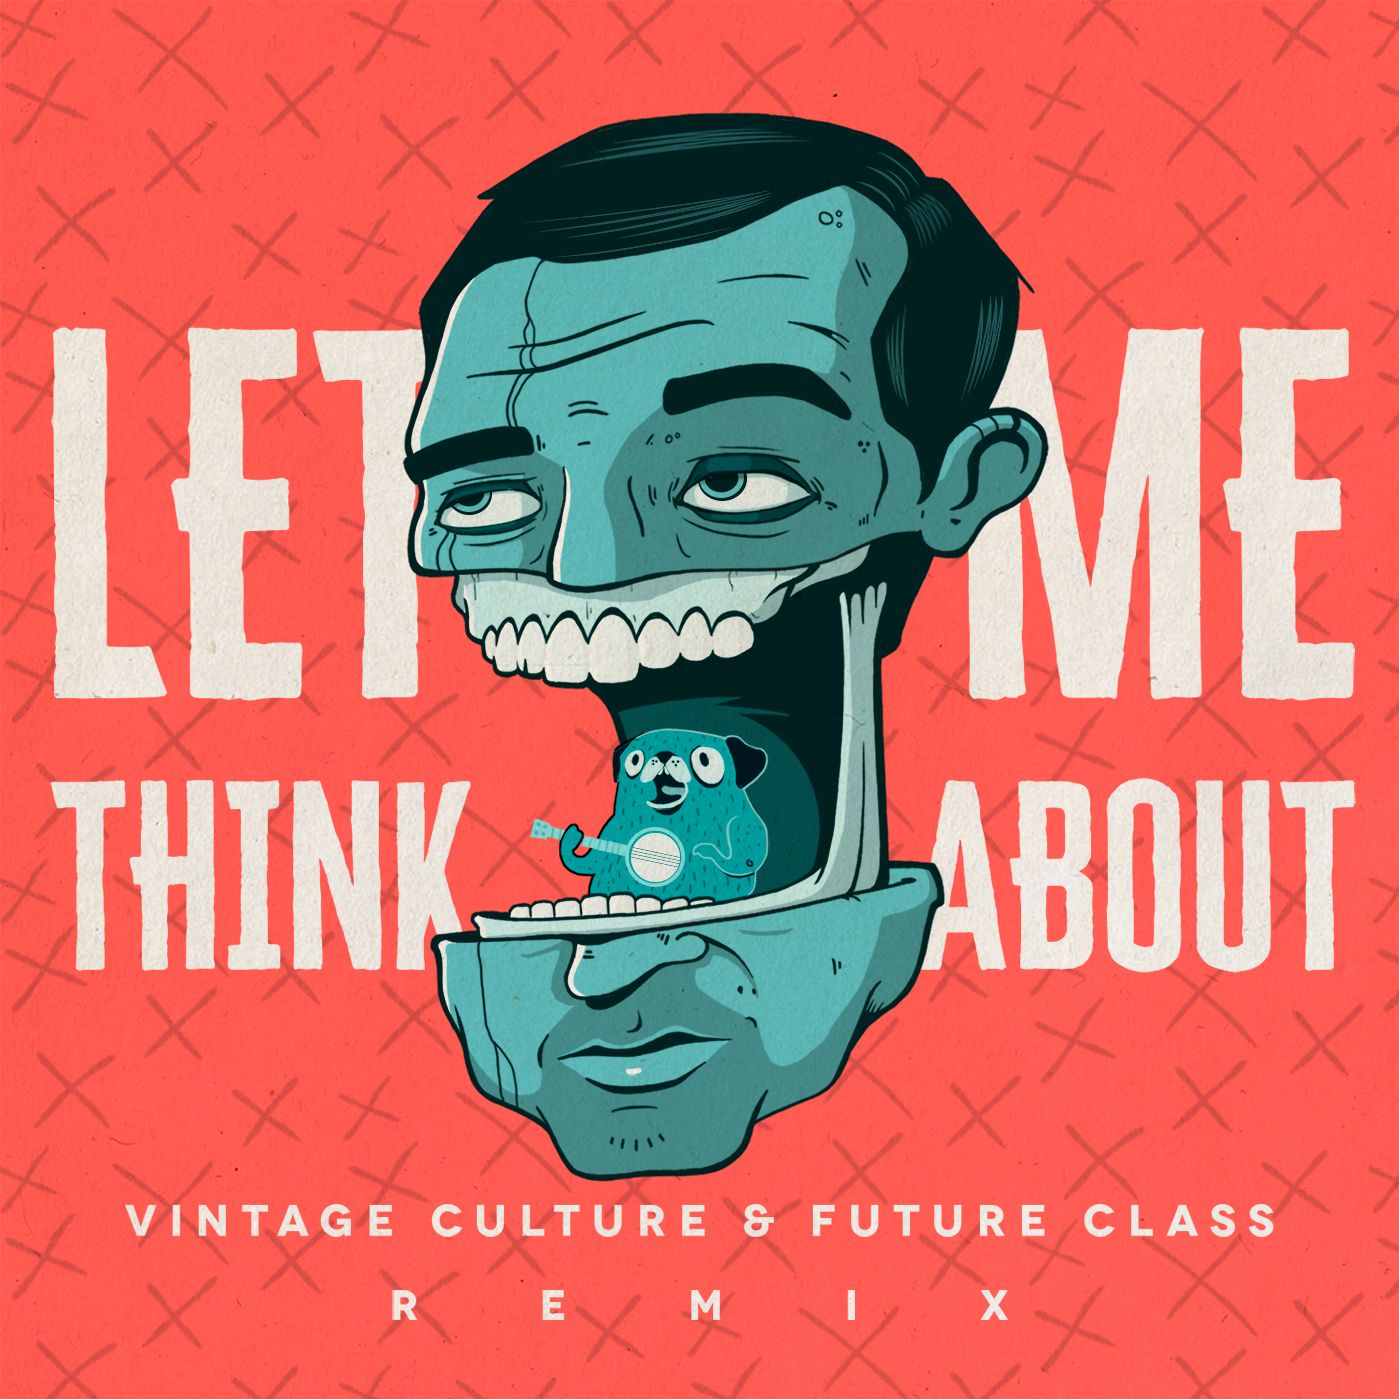 Letöltés Vintage Culture & Future Class - Let Me Think About